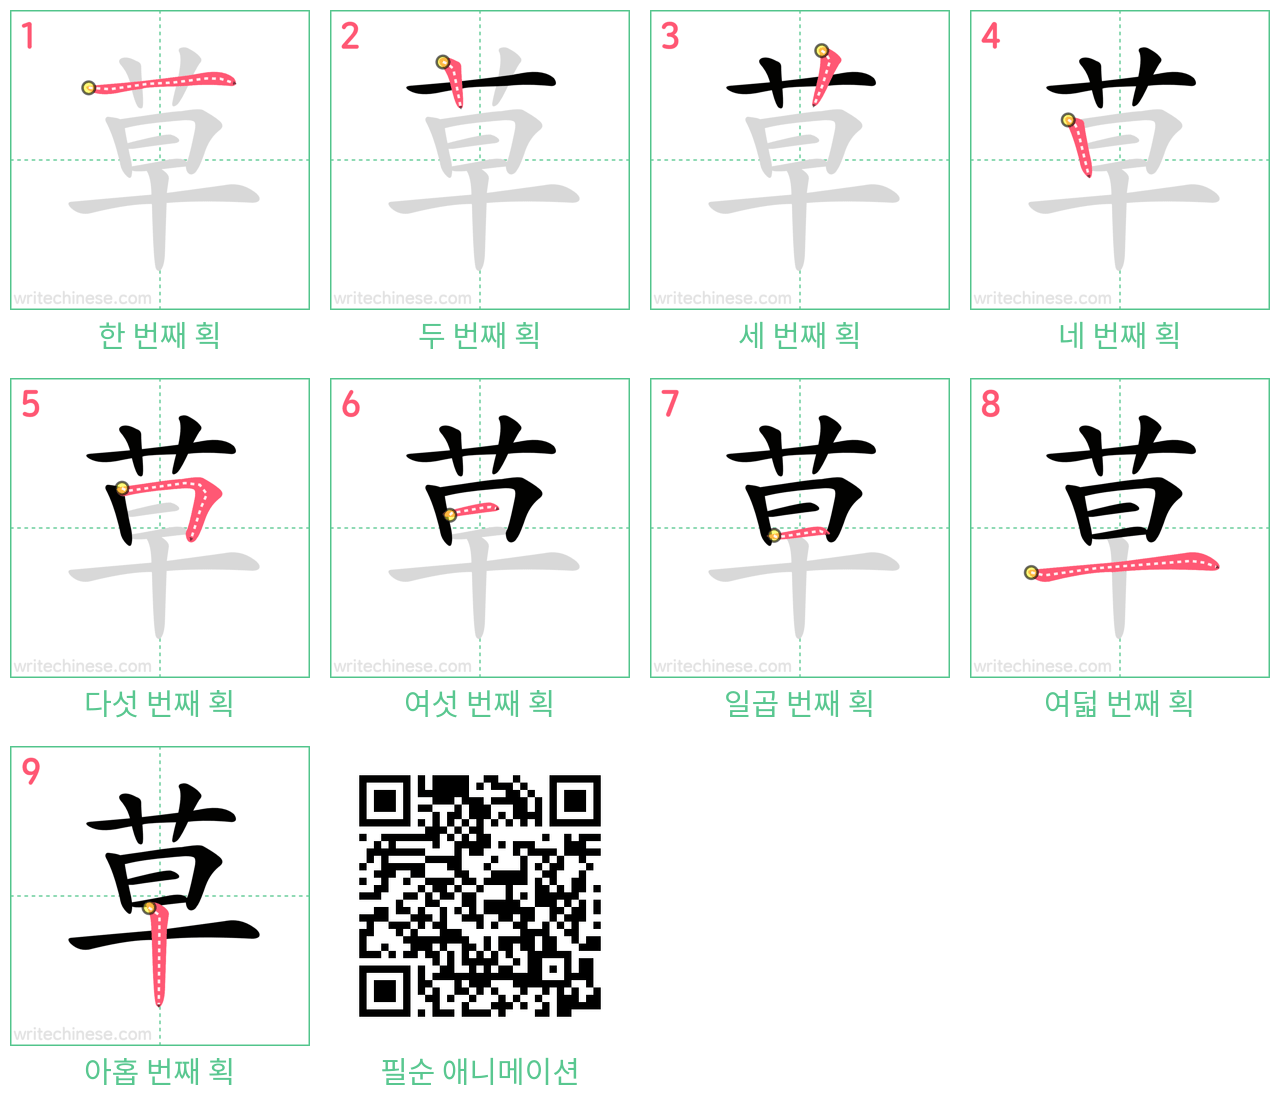 草 step-by-step stroke order diagrams